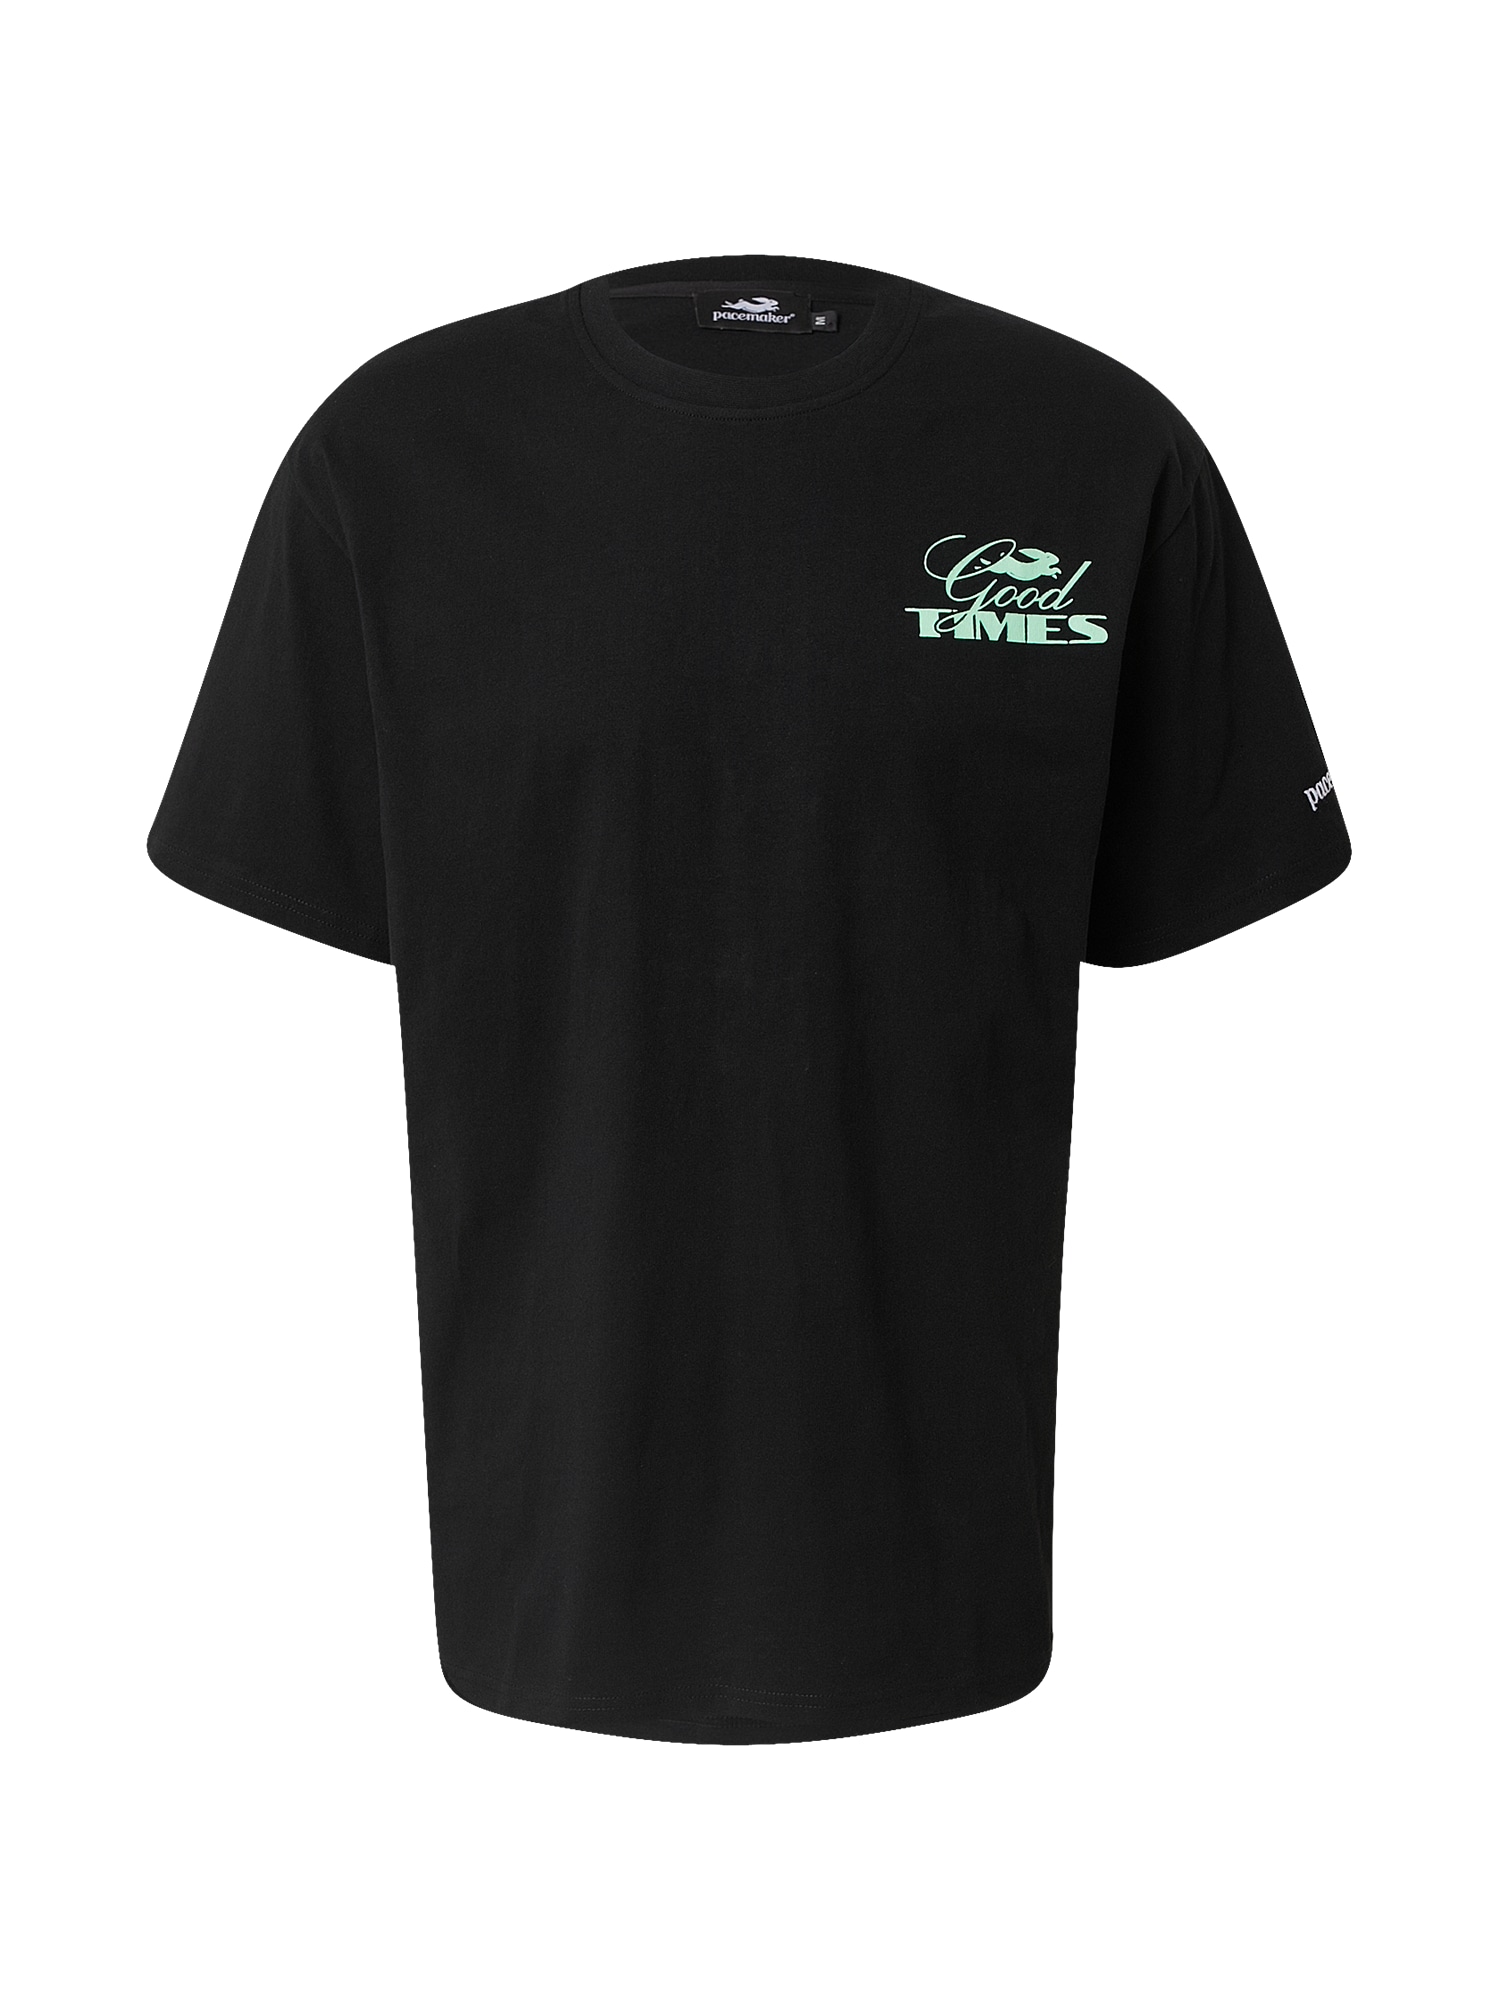 Pacemaker Marškinėliai 'GOOD TIMES' juoda / balta / šviesiai žalia